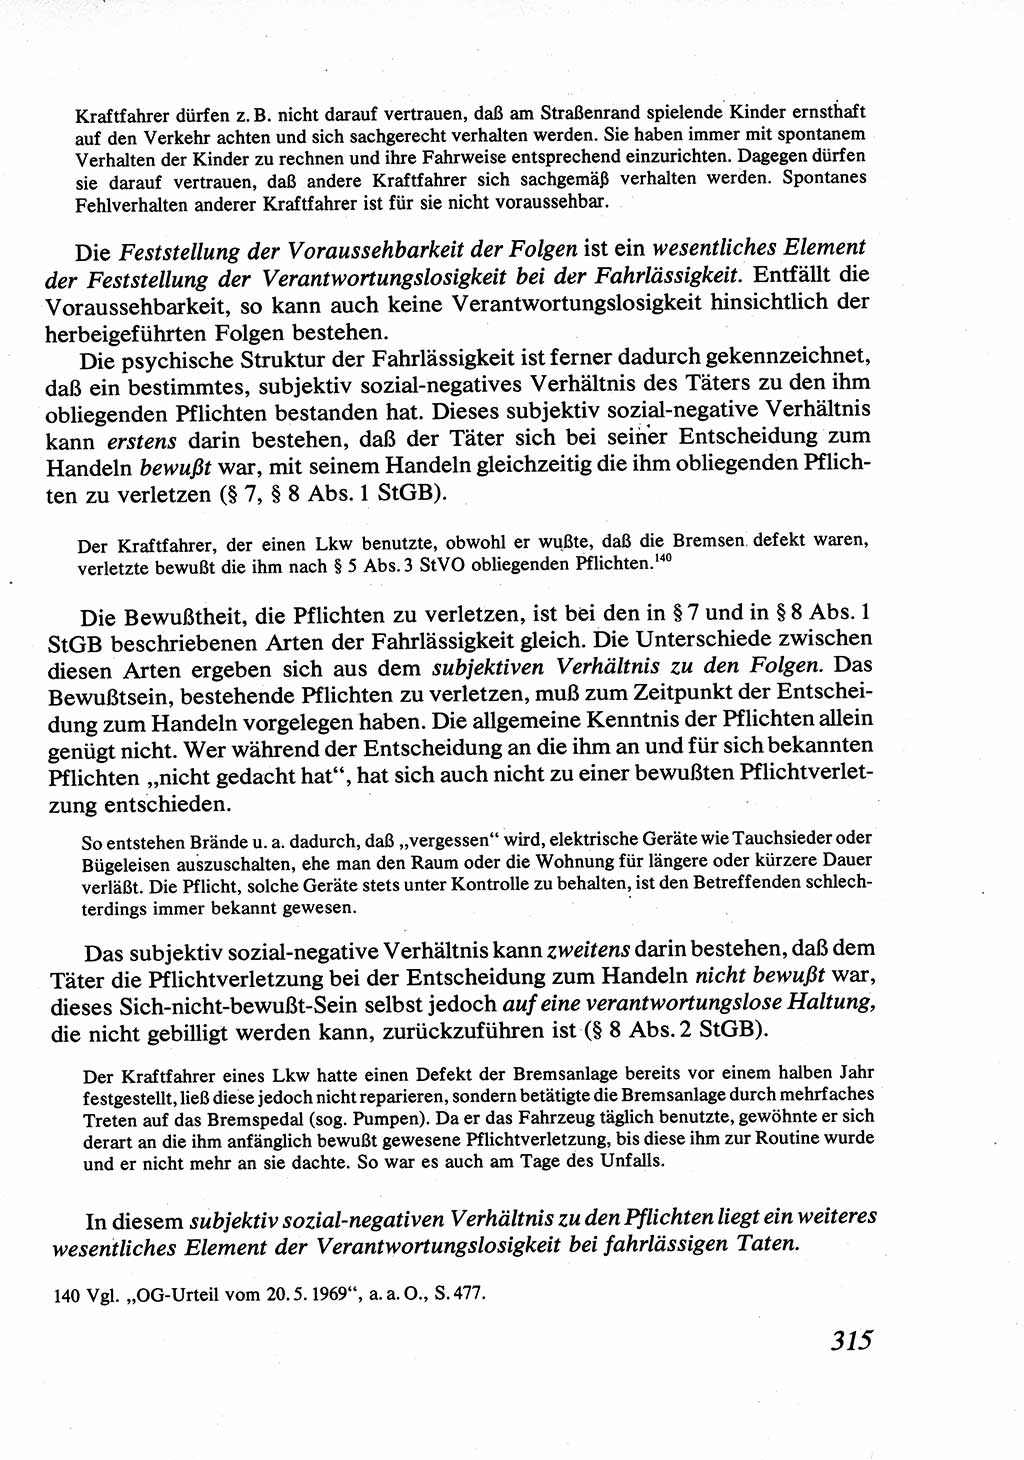 Strafrecht [Deutsche Demokratische Republik (DDR)], Allgemeiner Teil, Lehrbuch 1976, Seite 315 (Strafr. DDR AT Lb. 1976, S. 315)